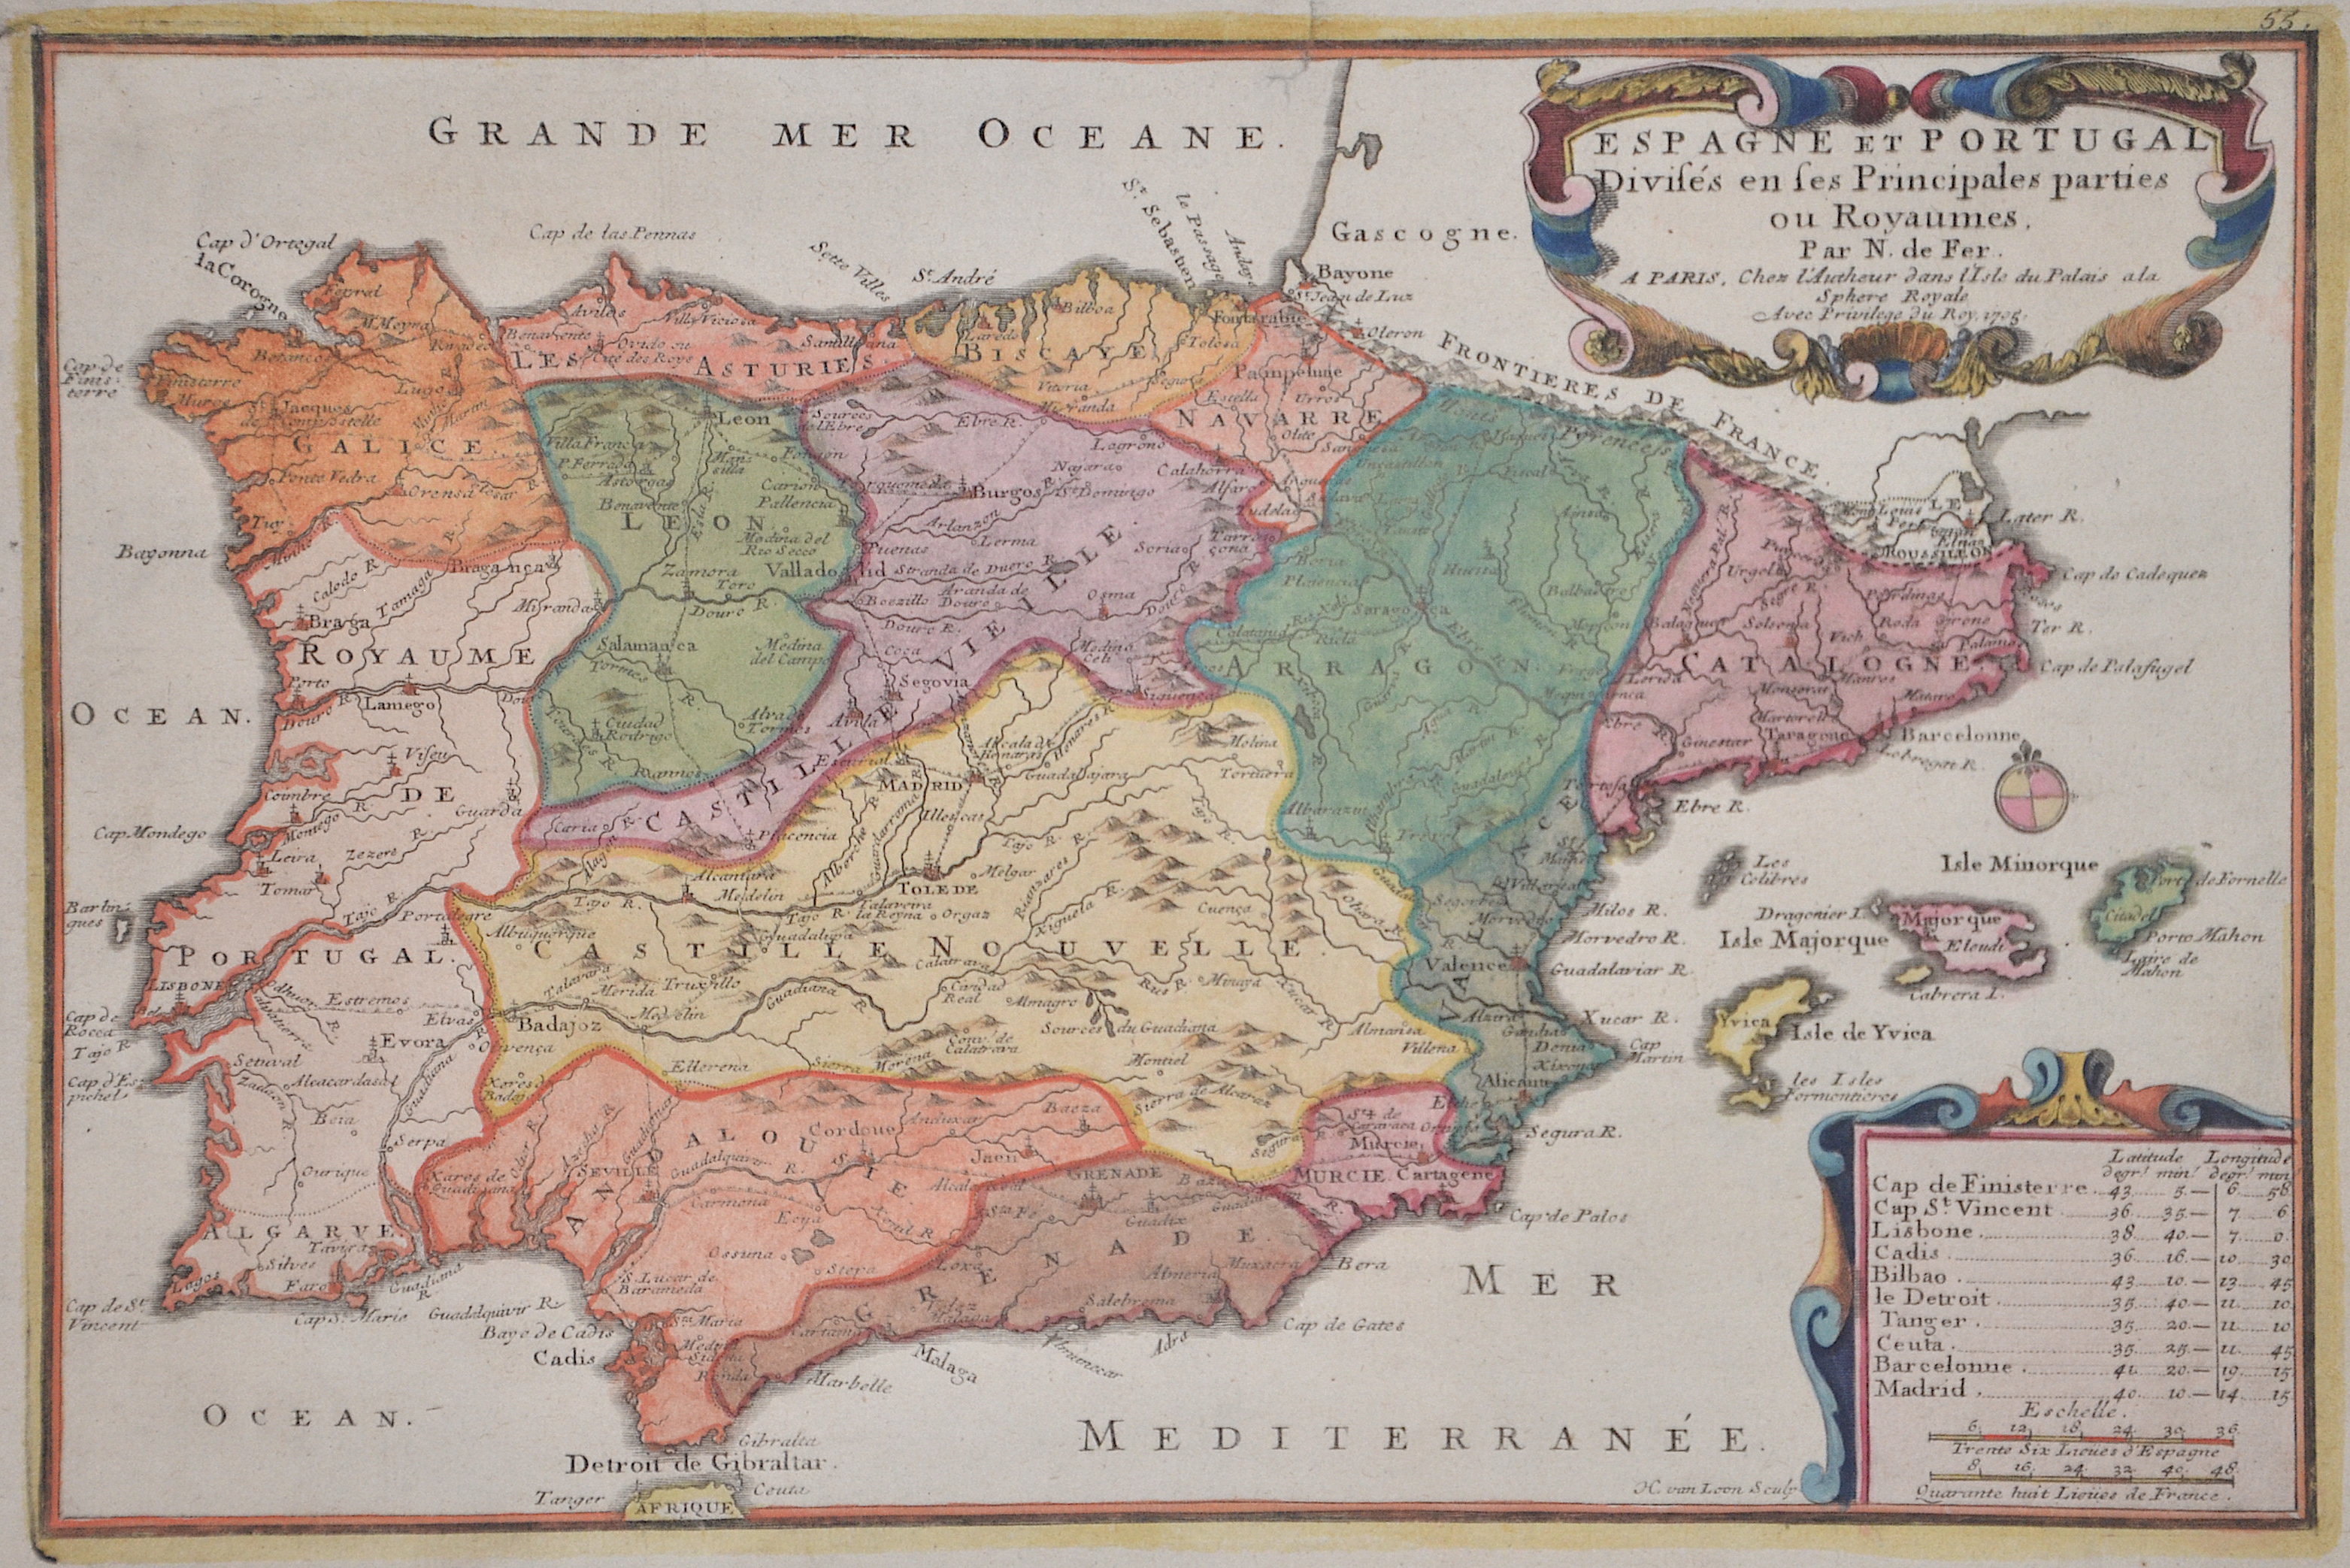 Fer, de  Espagne et Portugal Divises en ses Principales parties ou Royaumes.